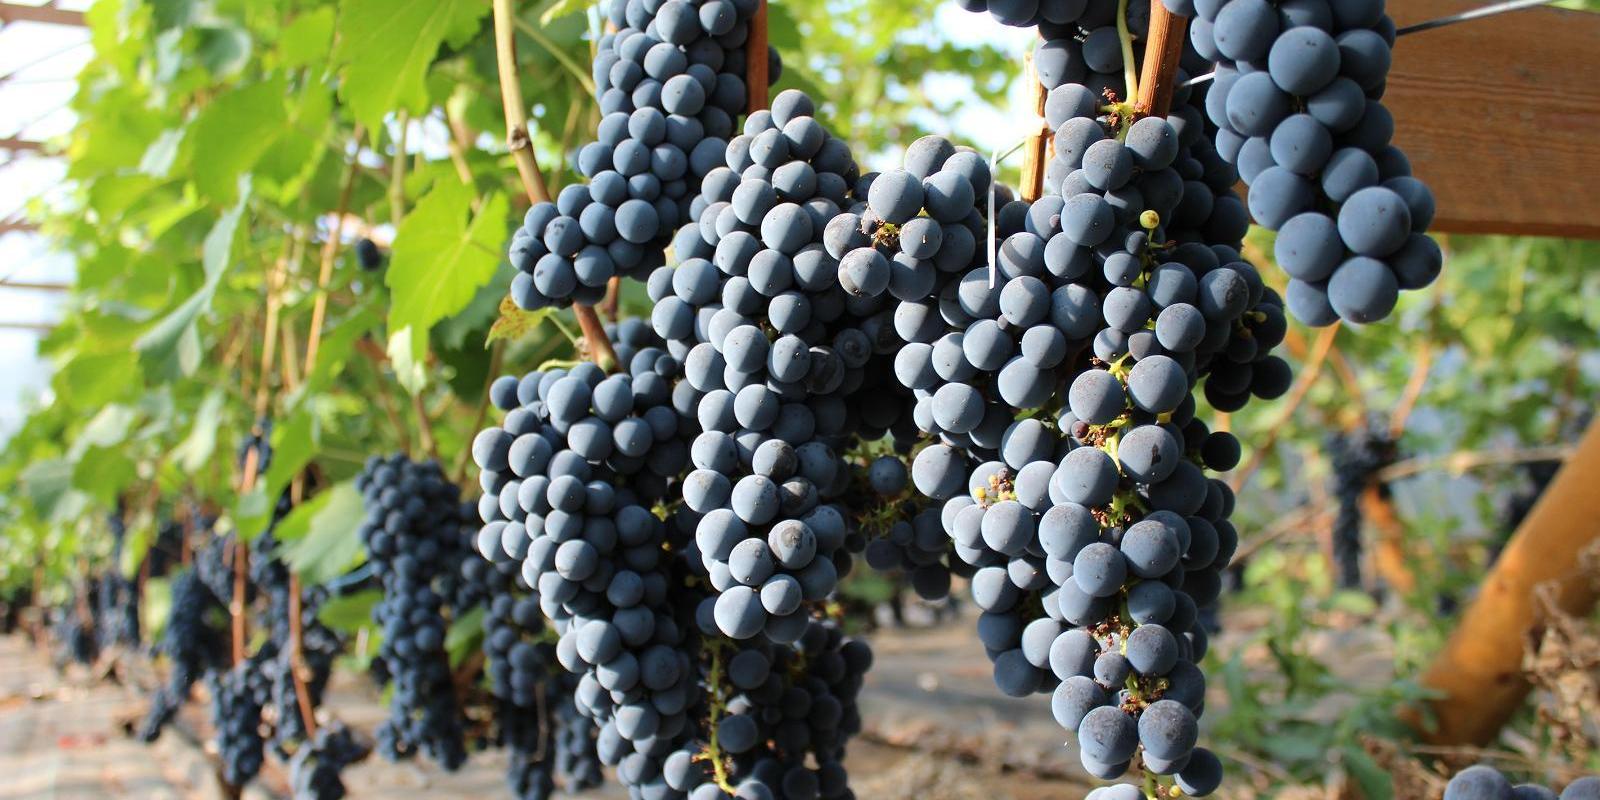 Vīna saimniecības "Järiste Veinitalu" vīnogu plantācijā nogatavojušies augļi